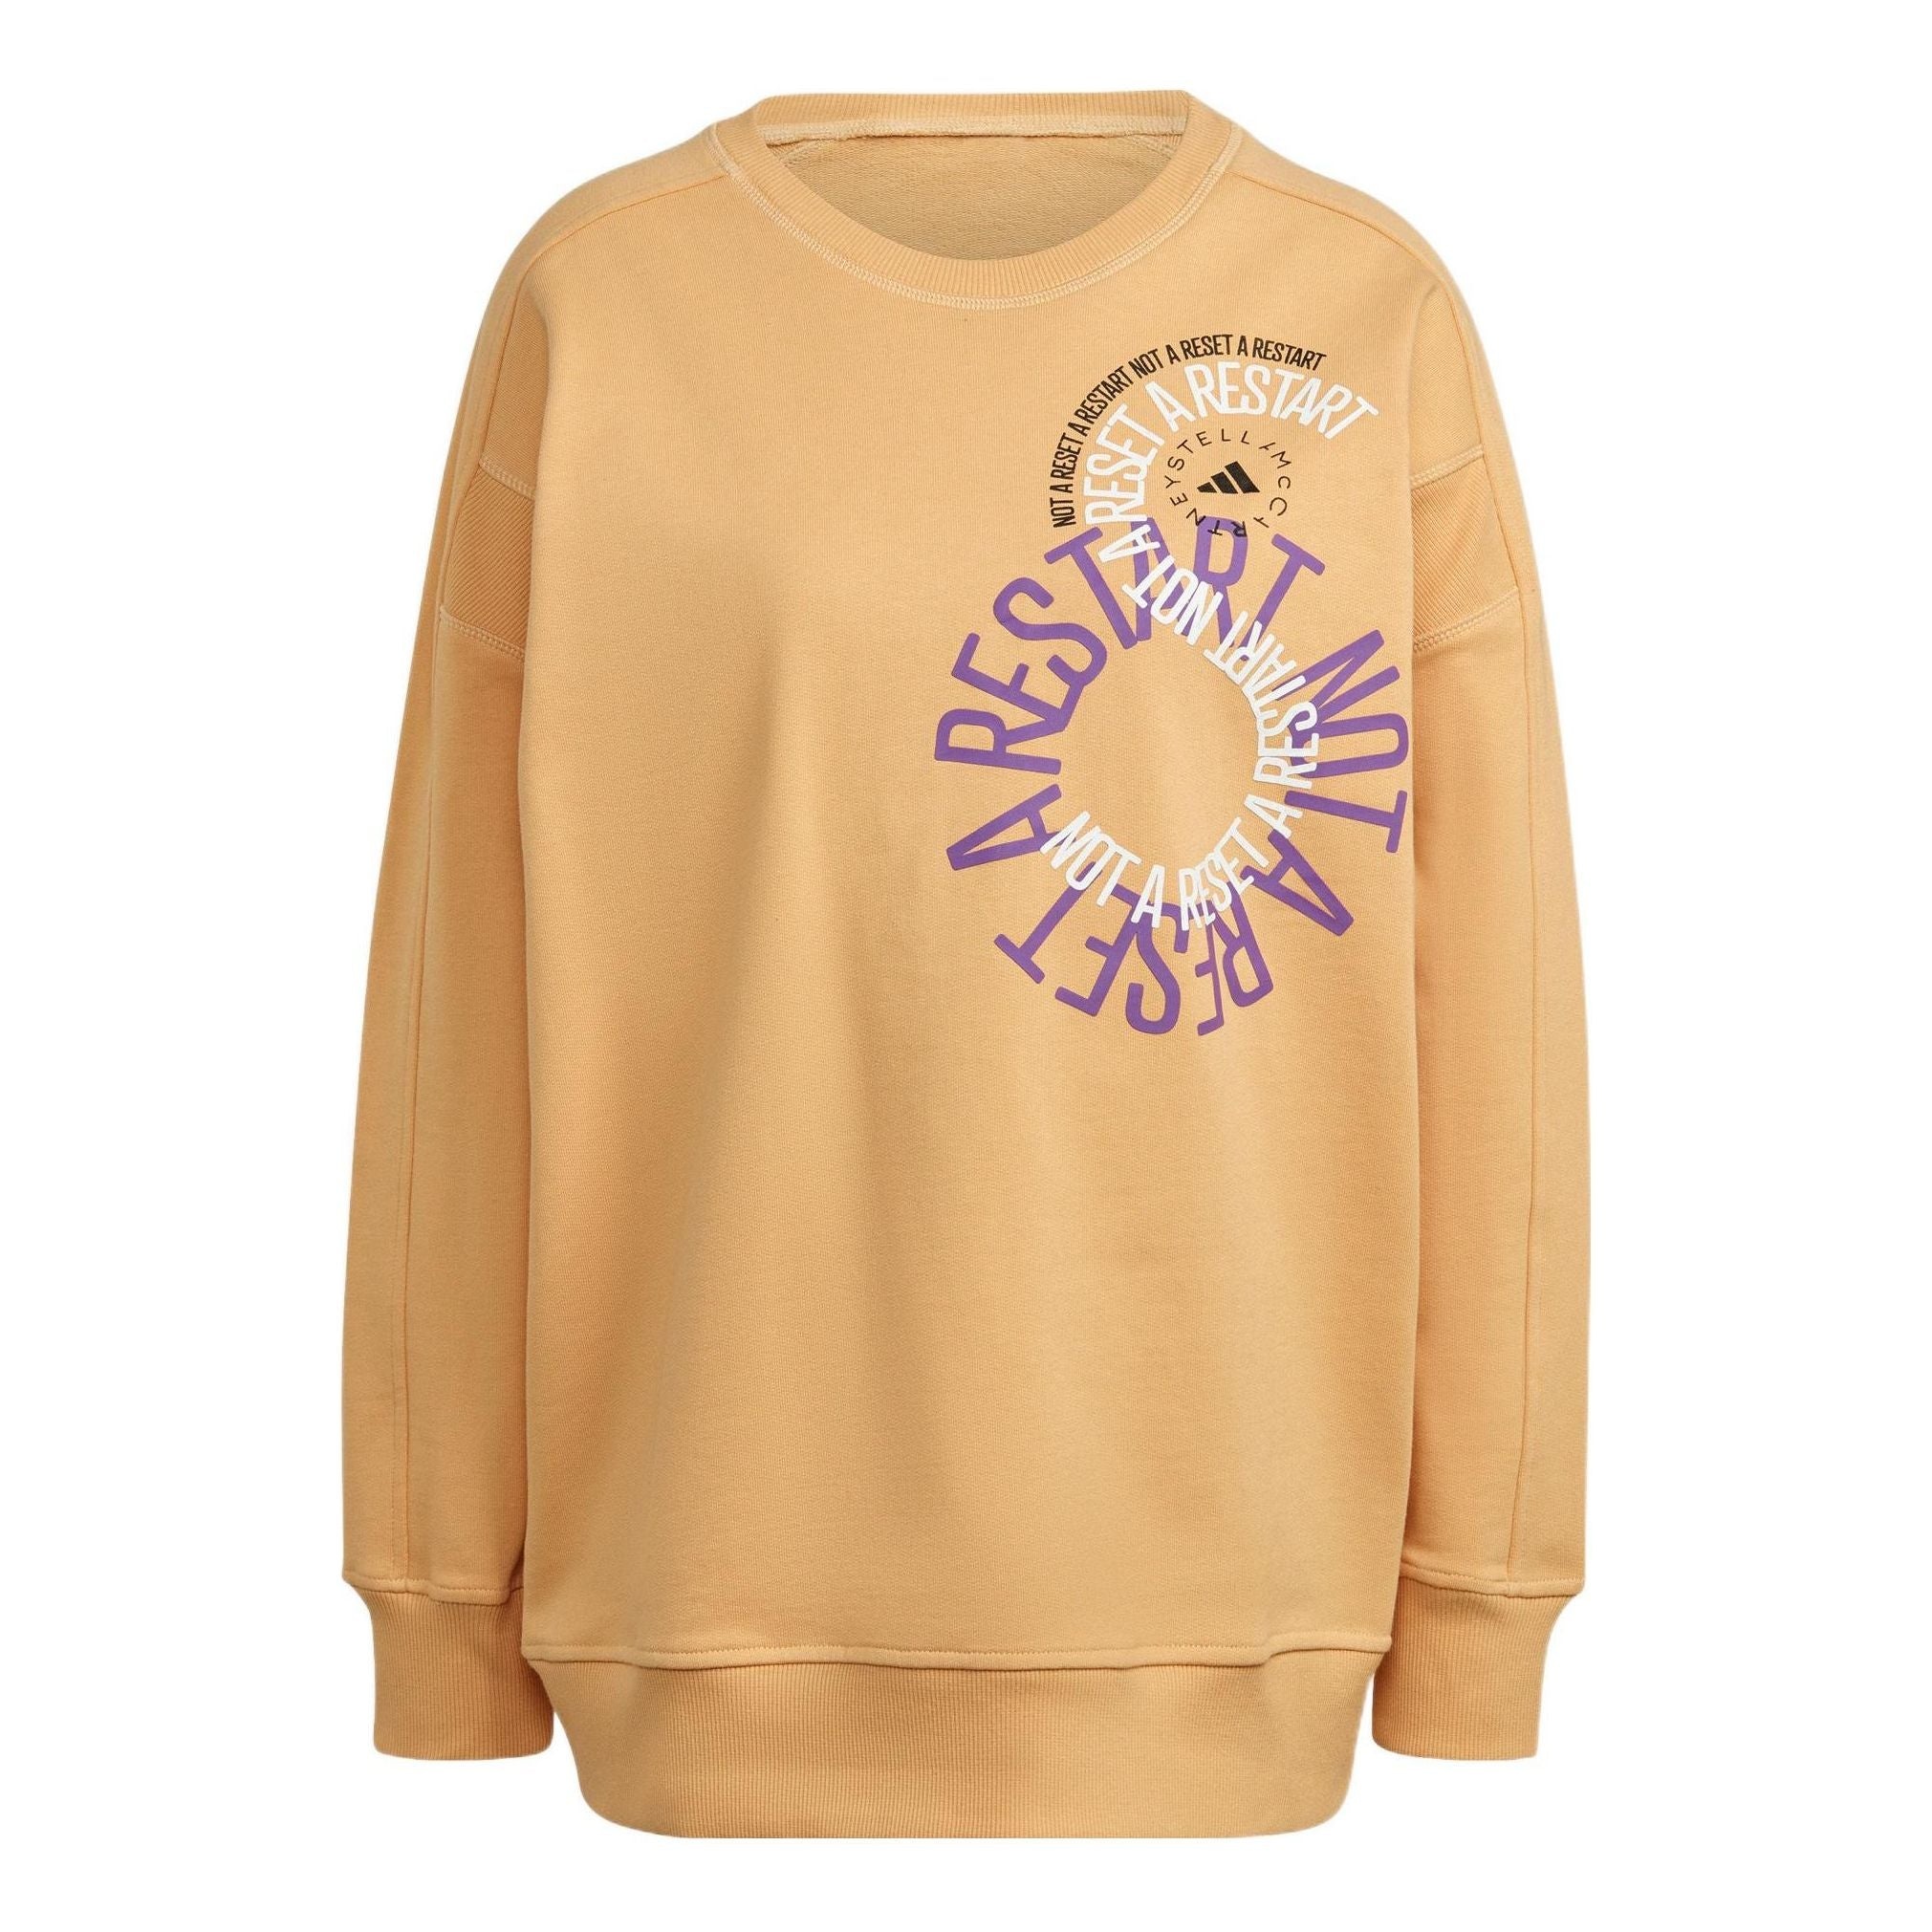 adidas by Stella McCartney Sportswear Sweatshirt 'Faded Pulse Amber' IB5886 - 1